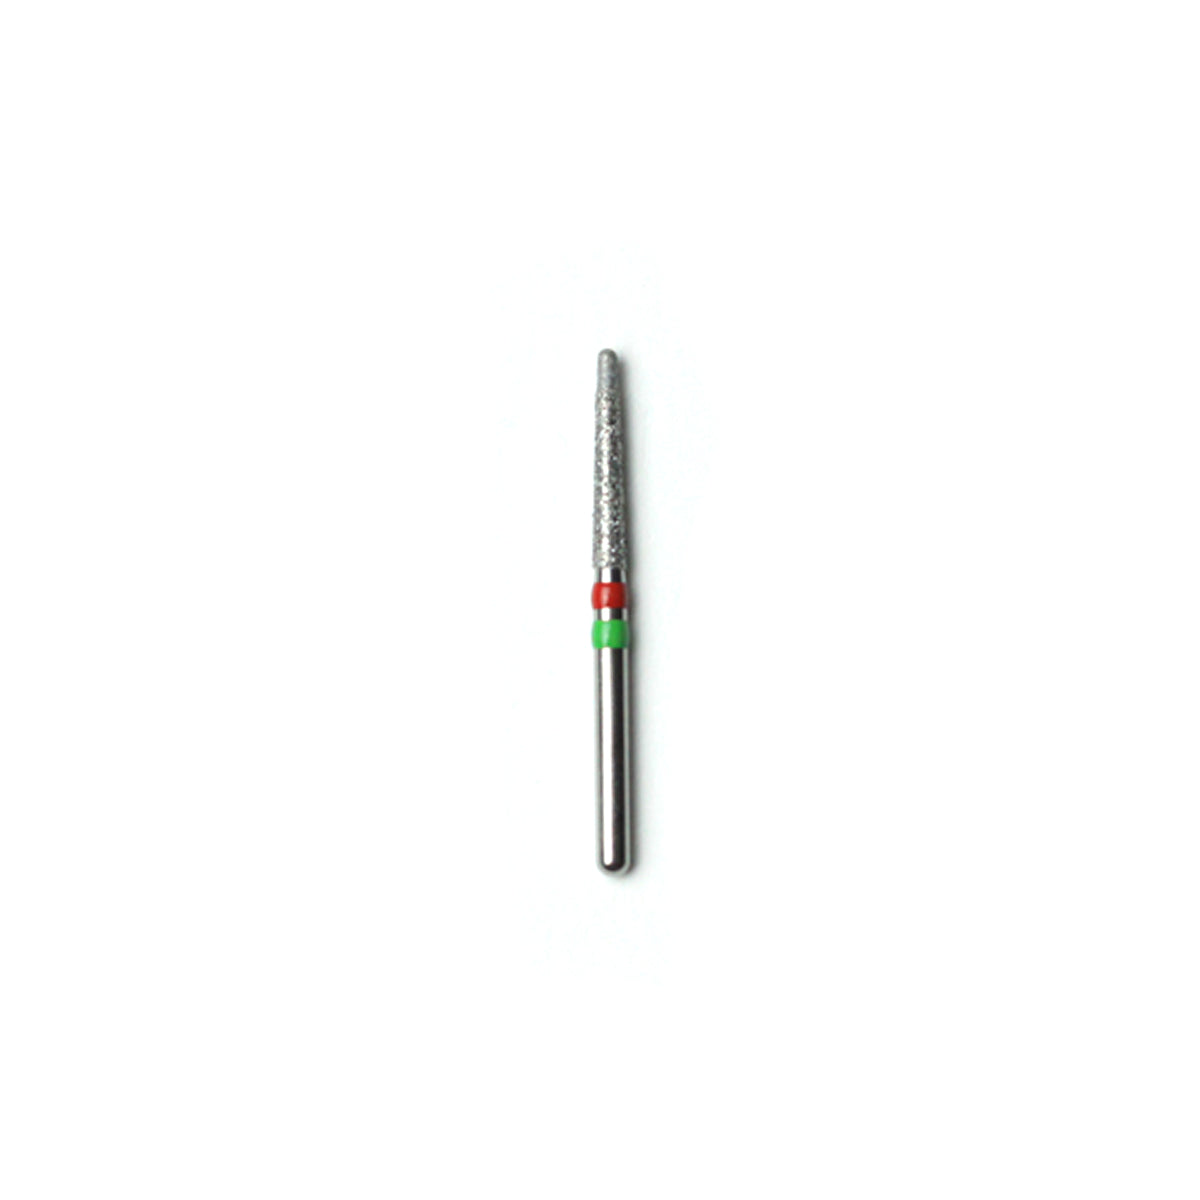 Fresa Diamantada Cónica de Doble Grano(Grueso y Fino) - GF844